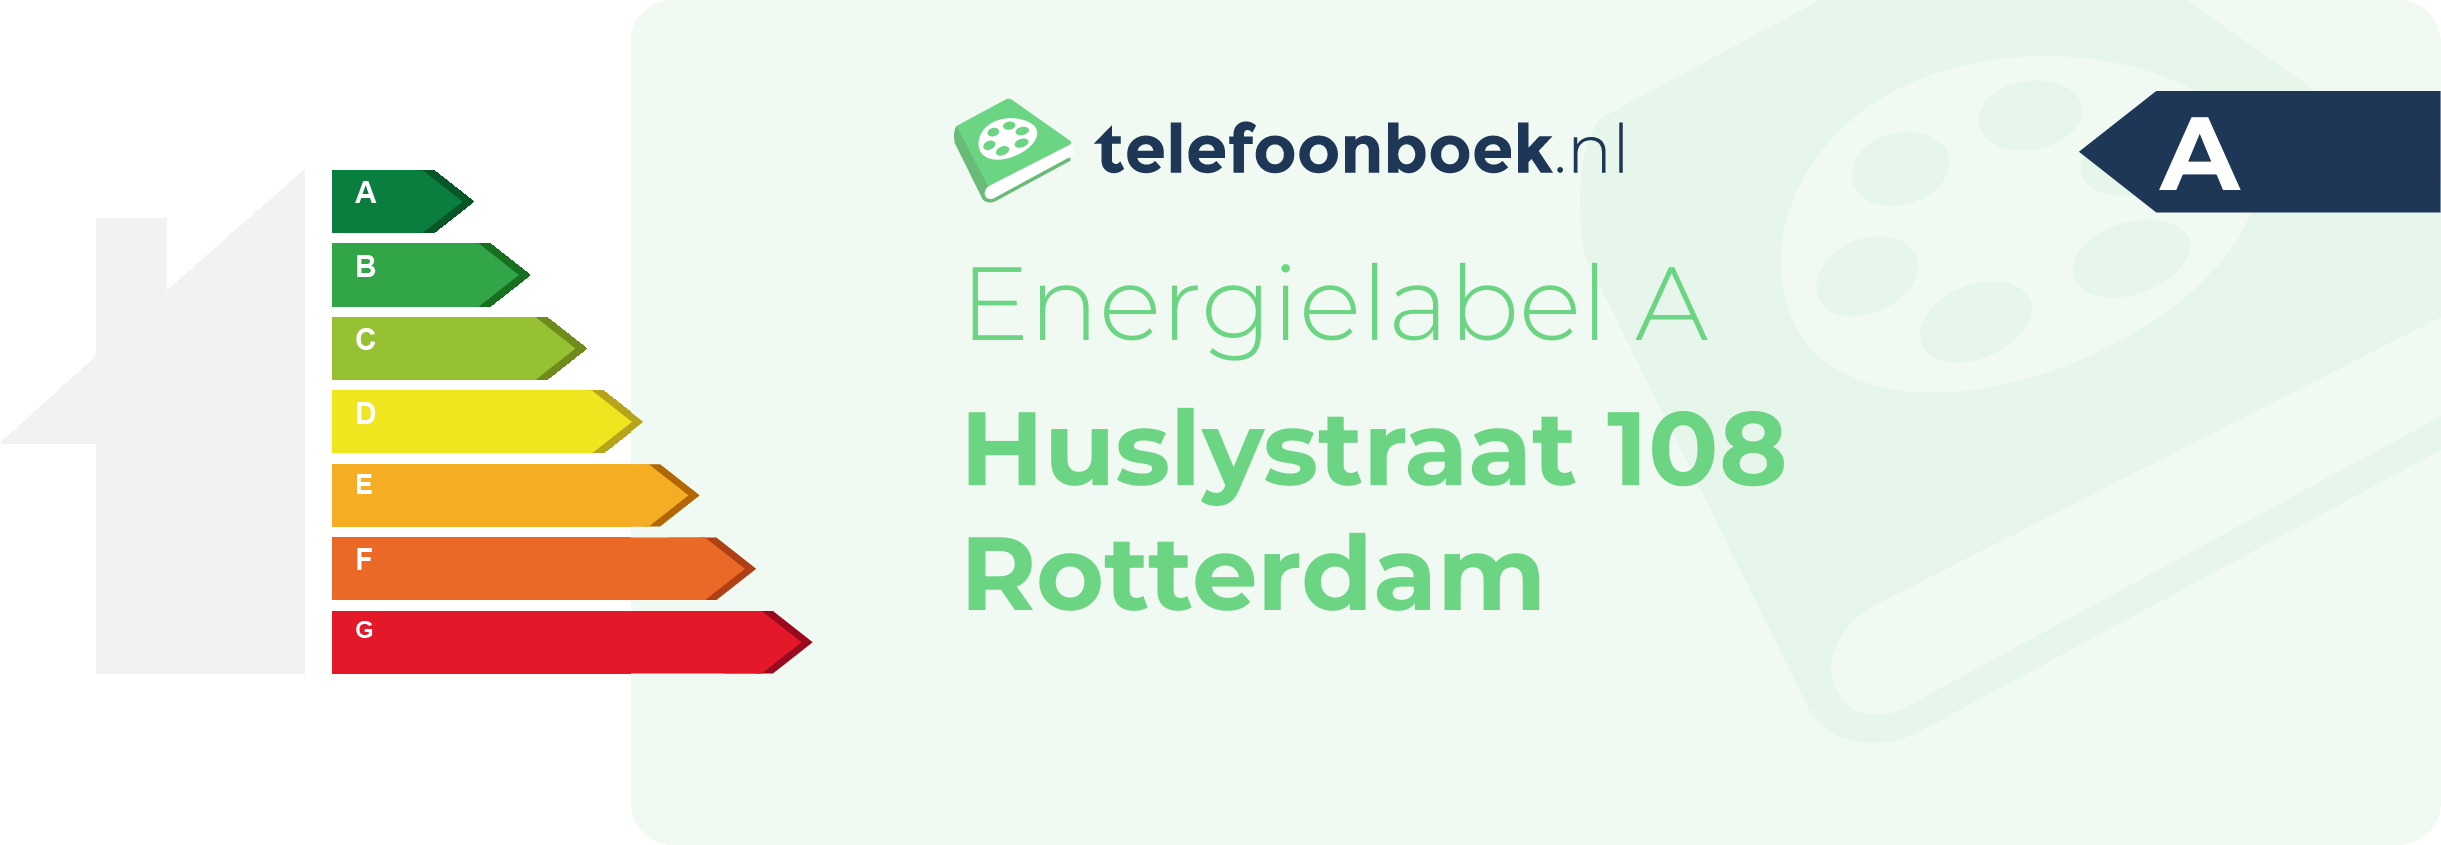 Energielabel Huslystraat 108 Rotterdam